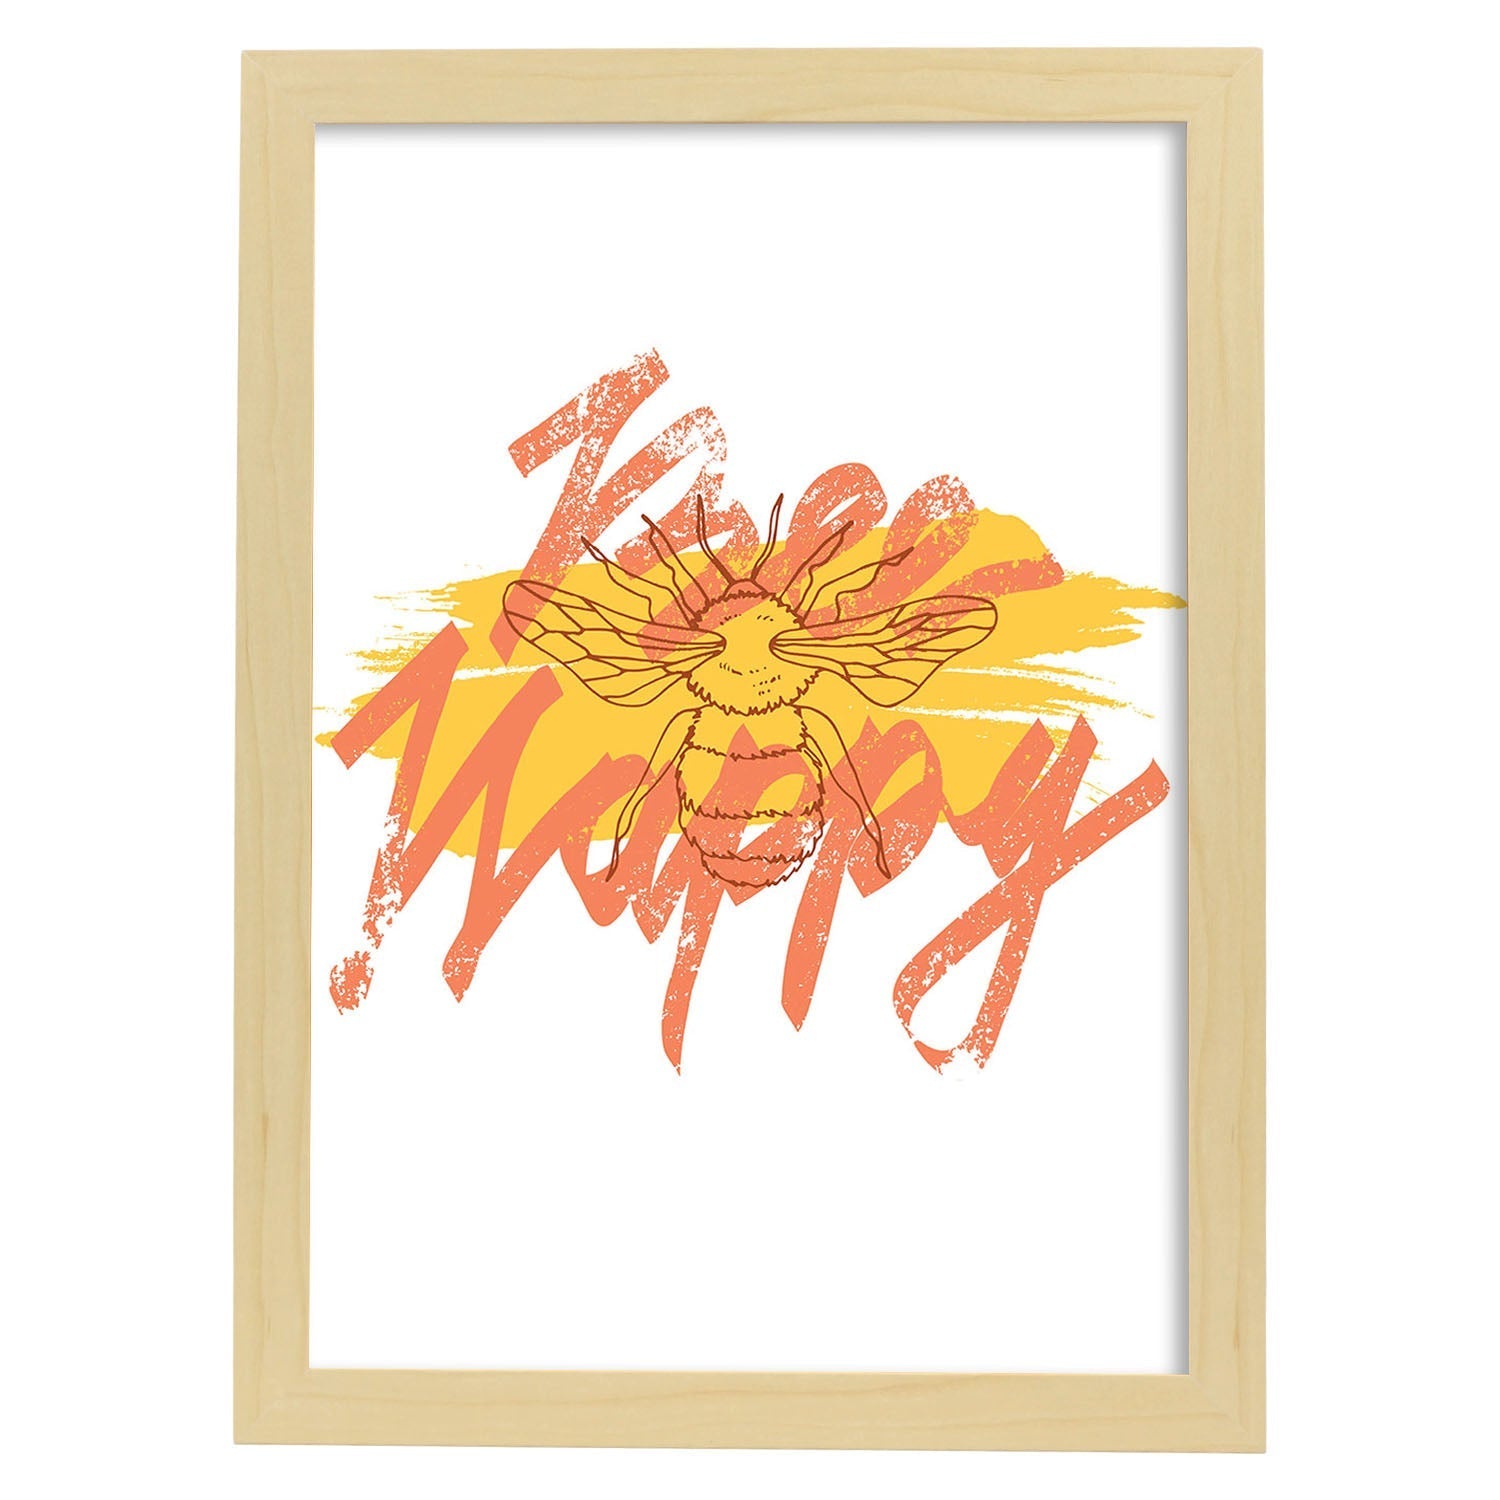 Posters con mensajes felices ilustrados. Lámina de decoración 'Bee Happy' con frases motivadoras y llenas de energia.-Artwork-Nacnic-A3-Marco Madera clara-Nacnic Estudio SL